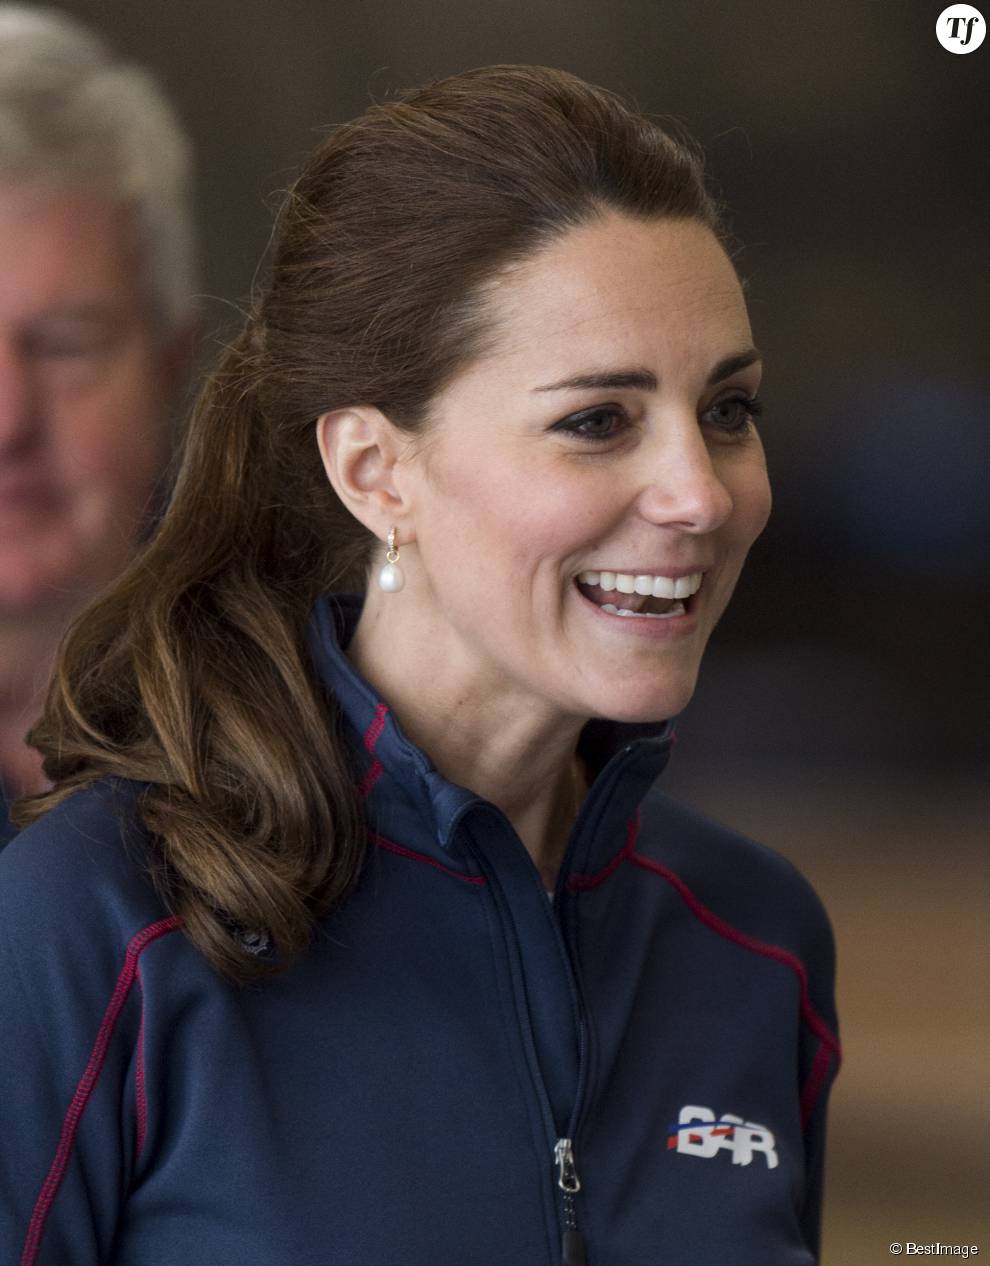 Kate Middleton garde le sourire sur les photos, mais en privé elle serait complètement dépassée par la situation.